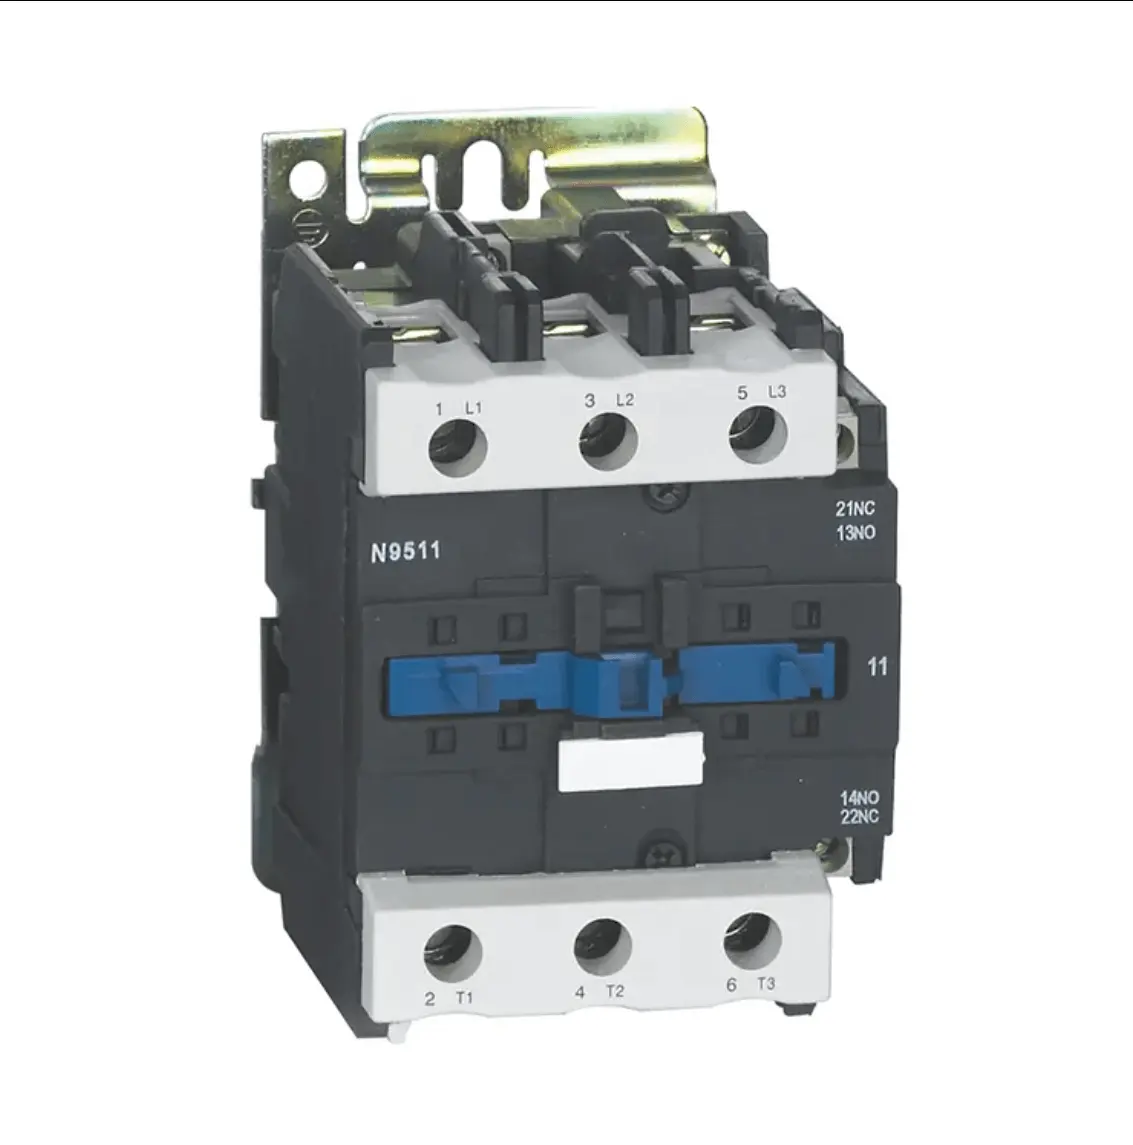 HZDX2-09A prodotto Premium contattore elettrico AC ad alta efficienza energetica nella categoria contattori